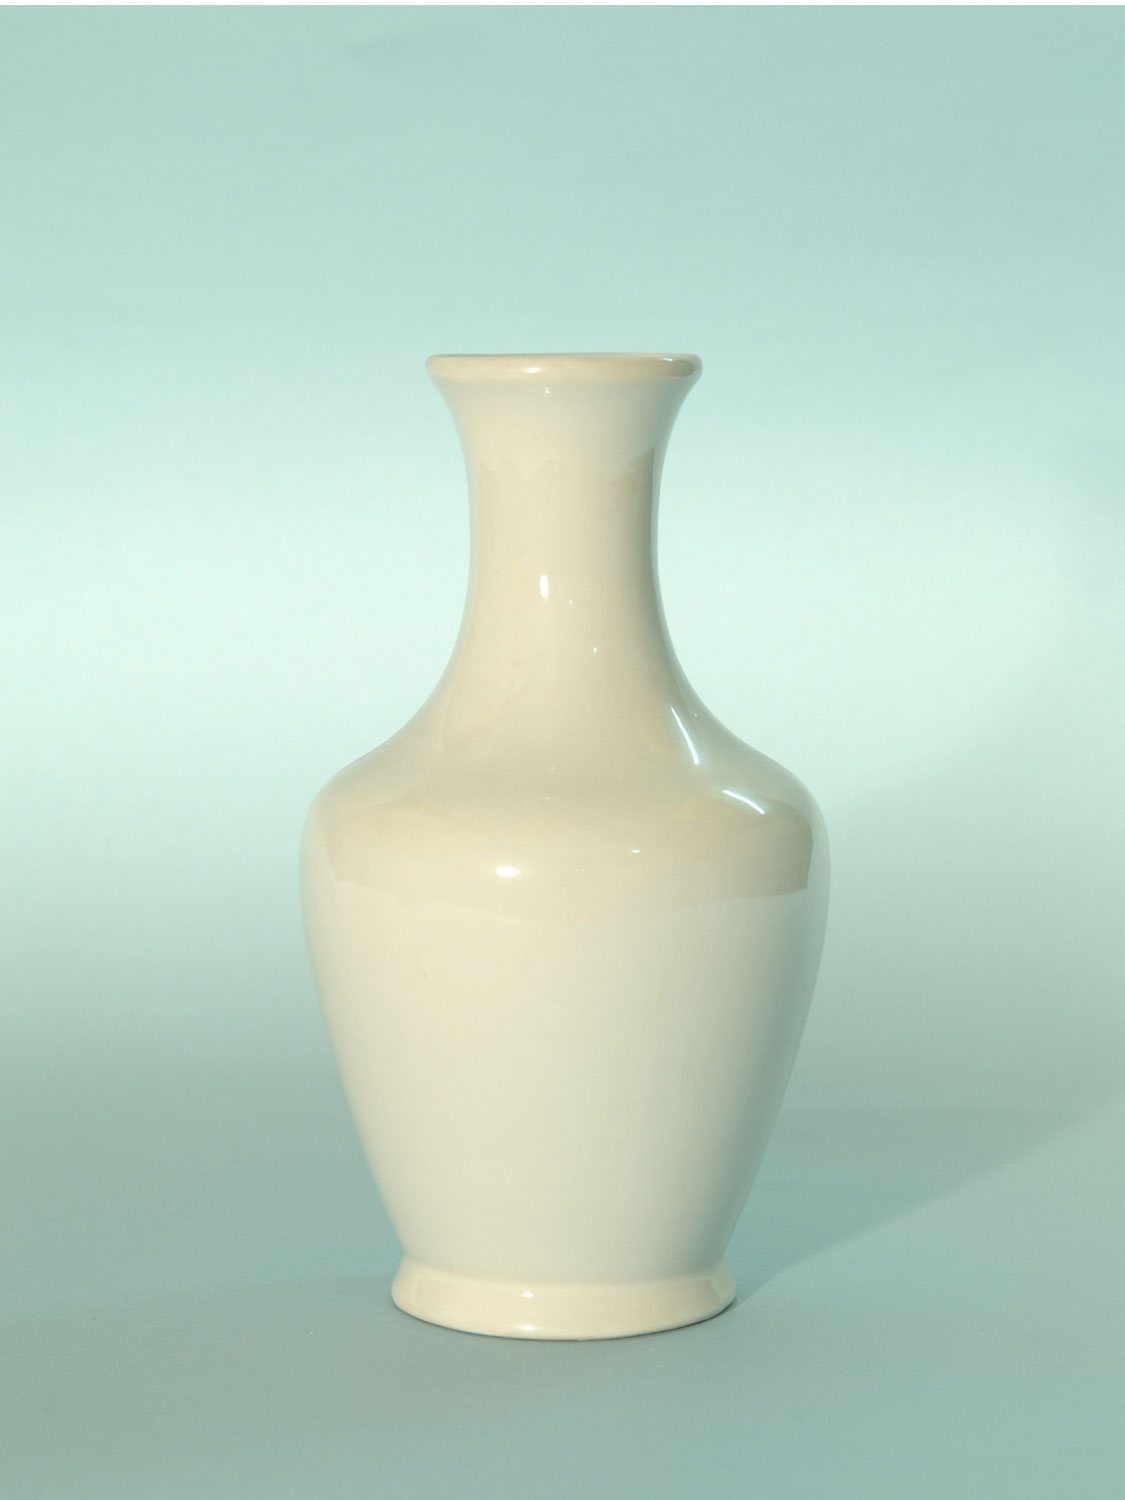 Suikerglas voor film. Witte suikerglas vaas, model cleopatra. 19,5 x 11 cm. Breekbaar glas nodig? Op een veilige set gebruik je suikerglas / nepglas waar nodig is.